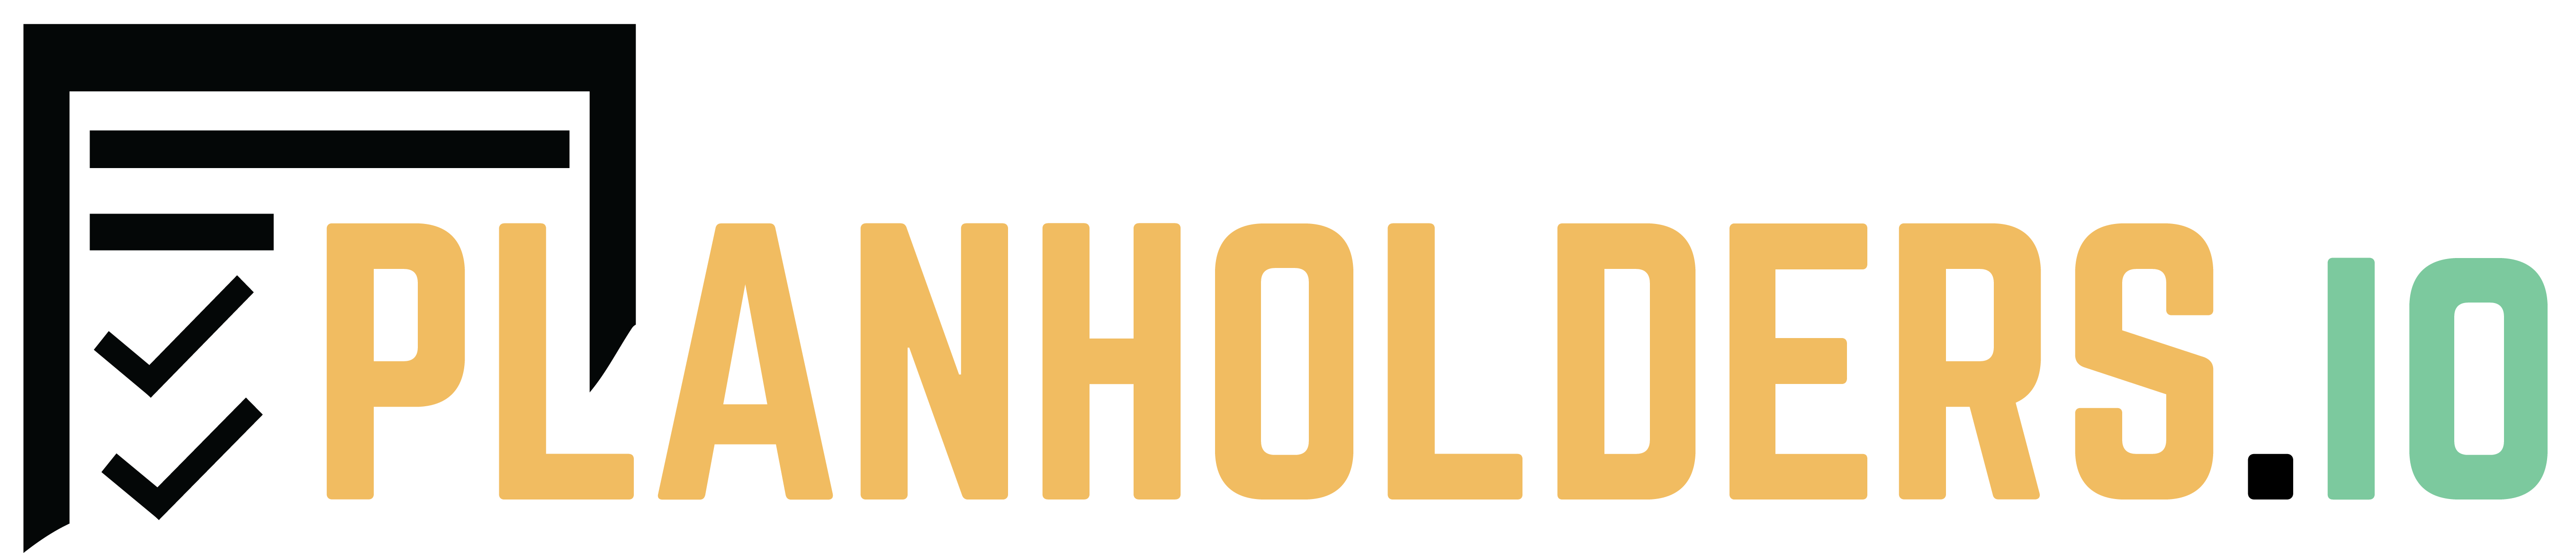 Planholders.io Logo